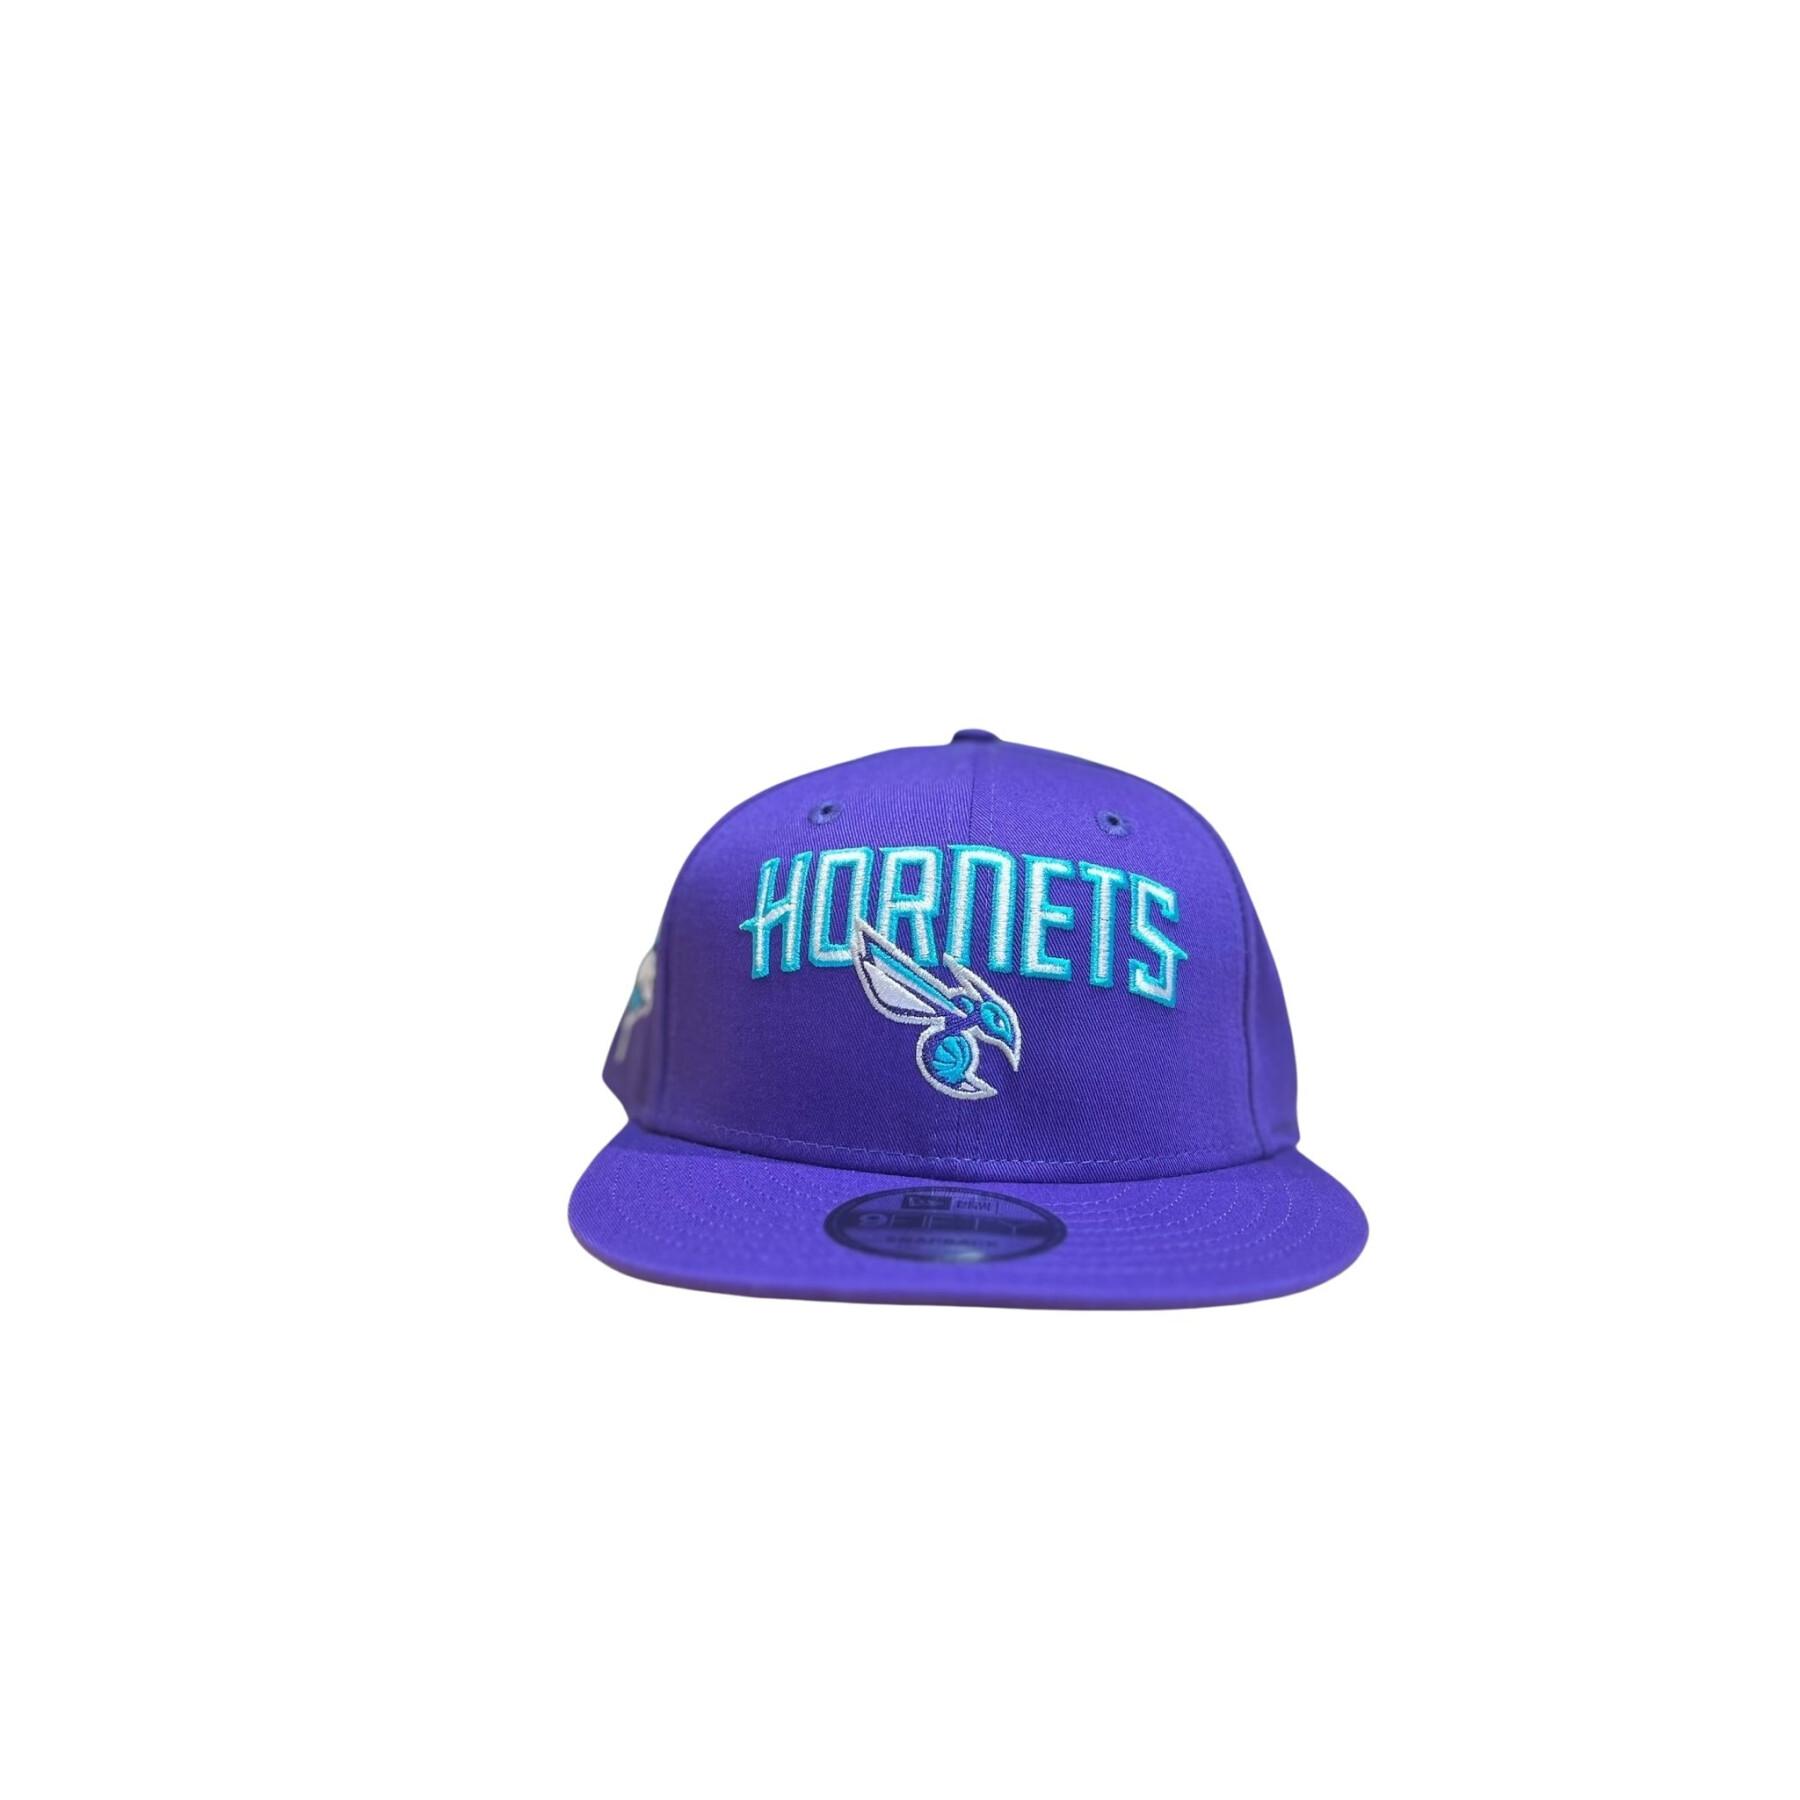 Gorra 9fifty Hornets NBA